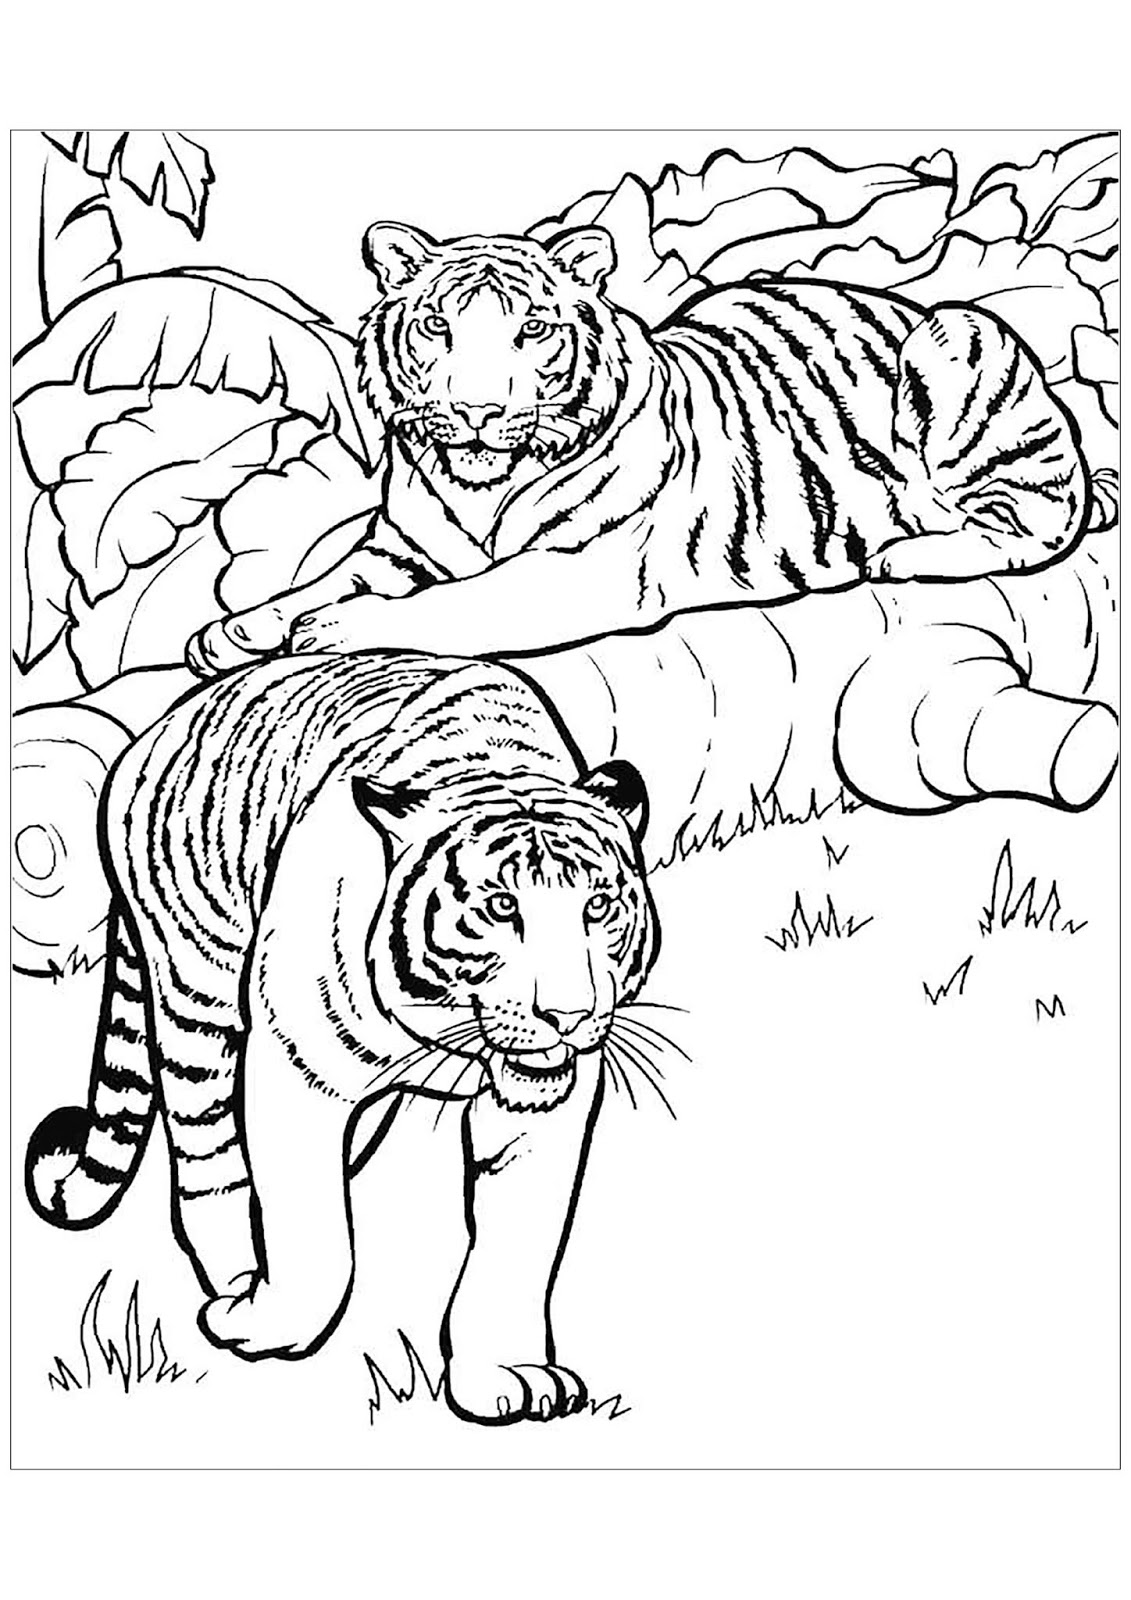 Tranh tô màu hai con hổ